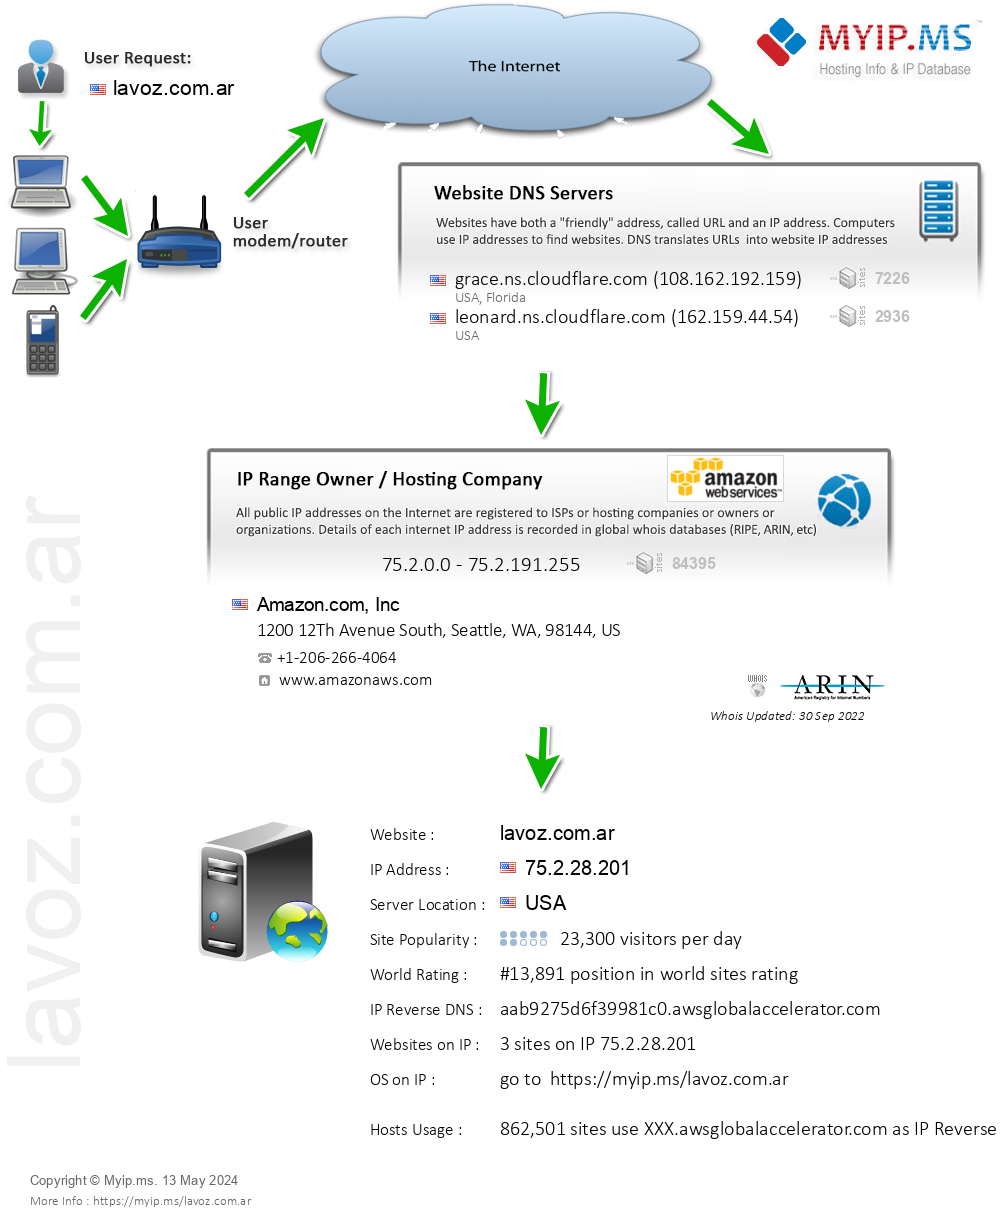 Lavoz.com.ar - Website Hosting Visual IP Diagram